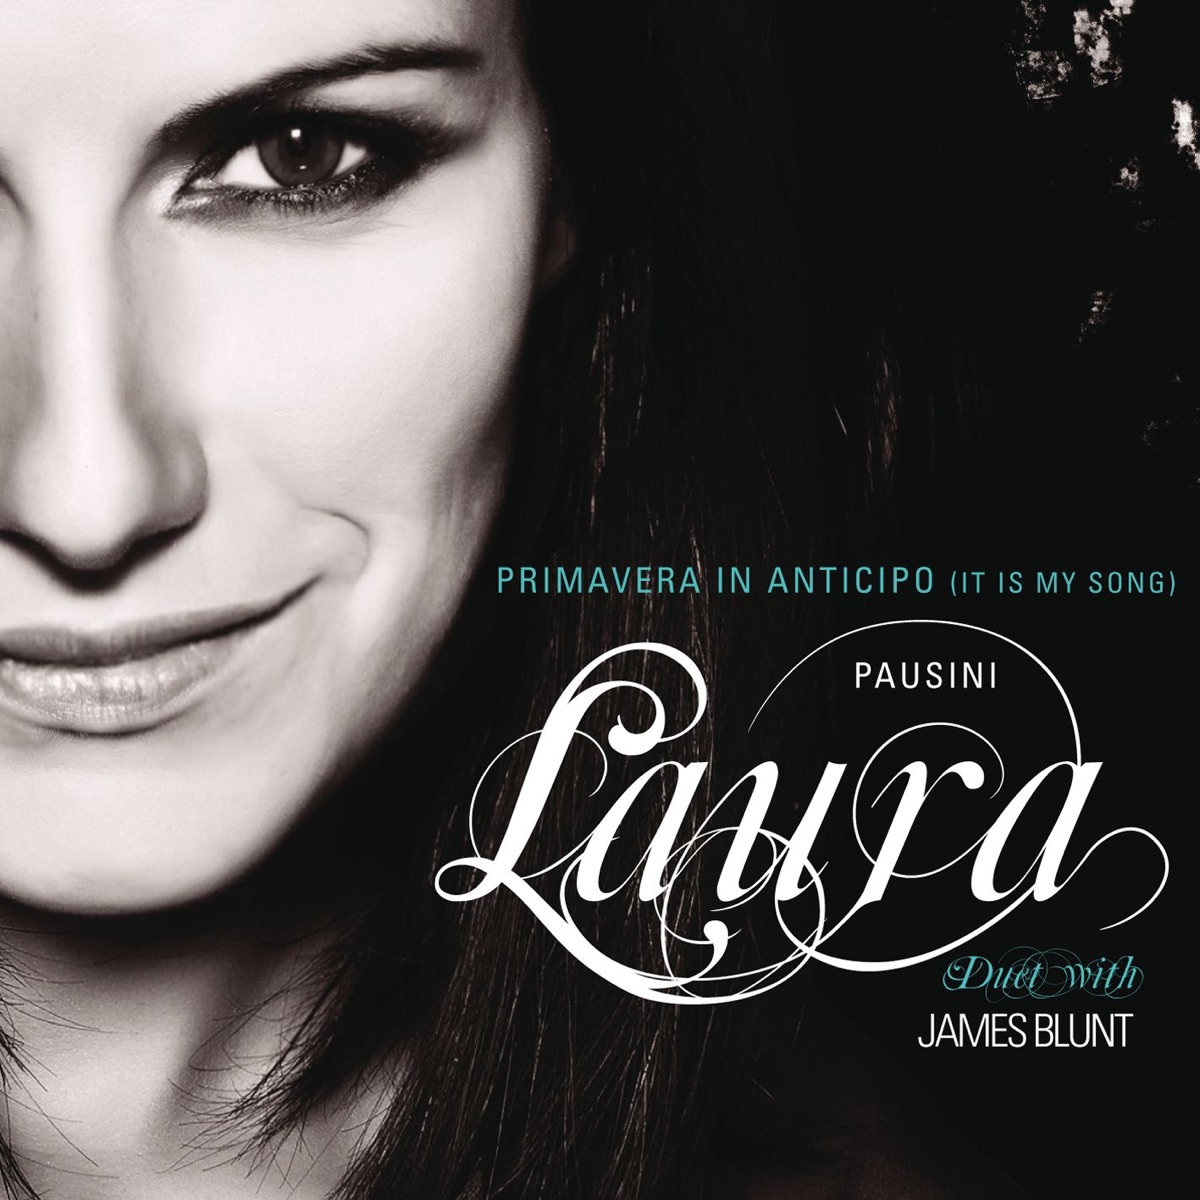 Laura Pausini & James Blunt — Primavera in anticipo (It Is My Song) cover artwork